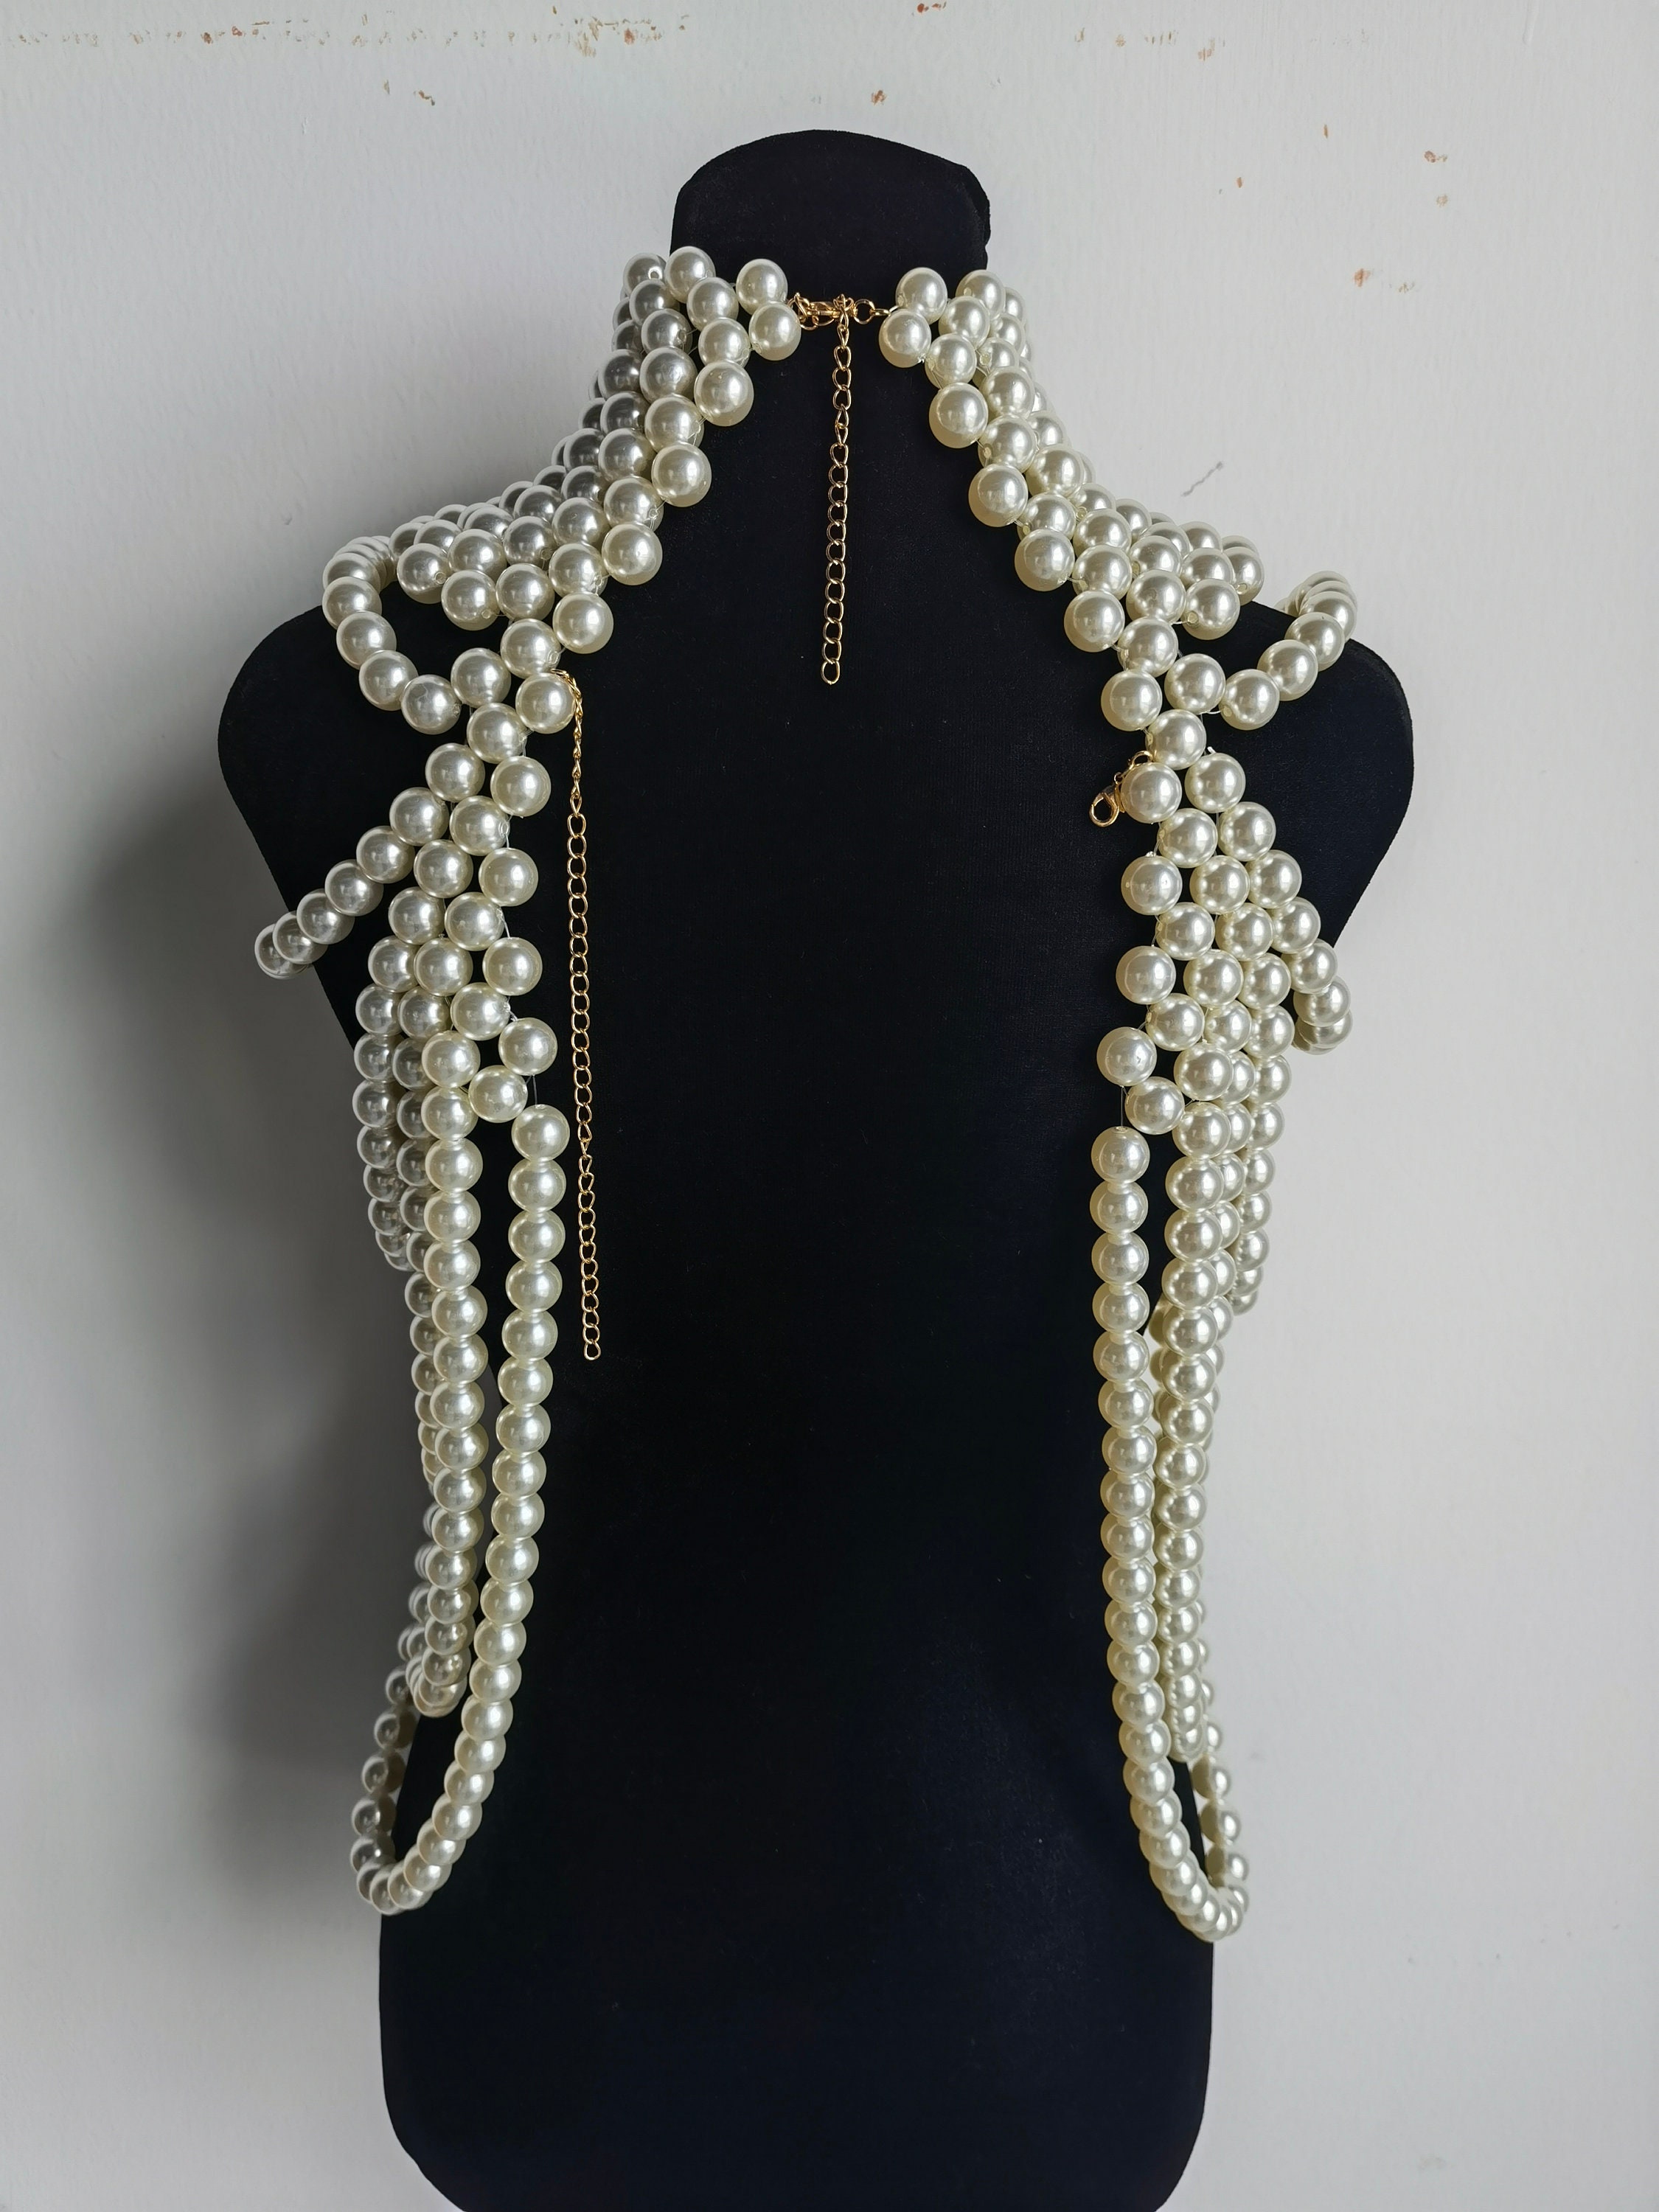 Big Body Jewelry Women, Pearls Body Chains Jewelry